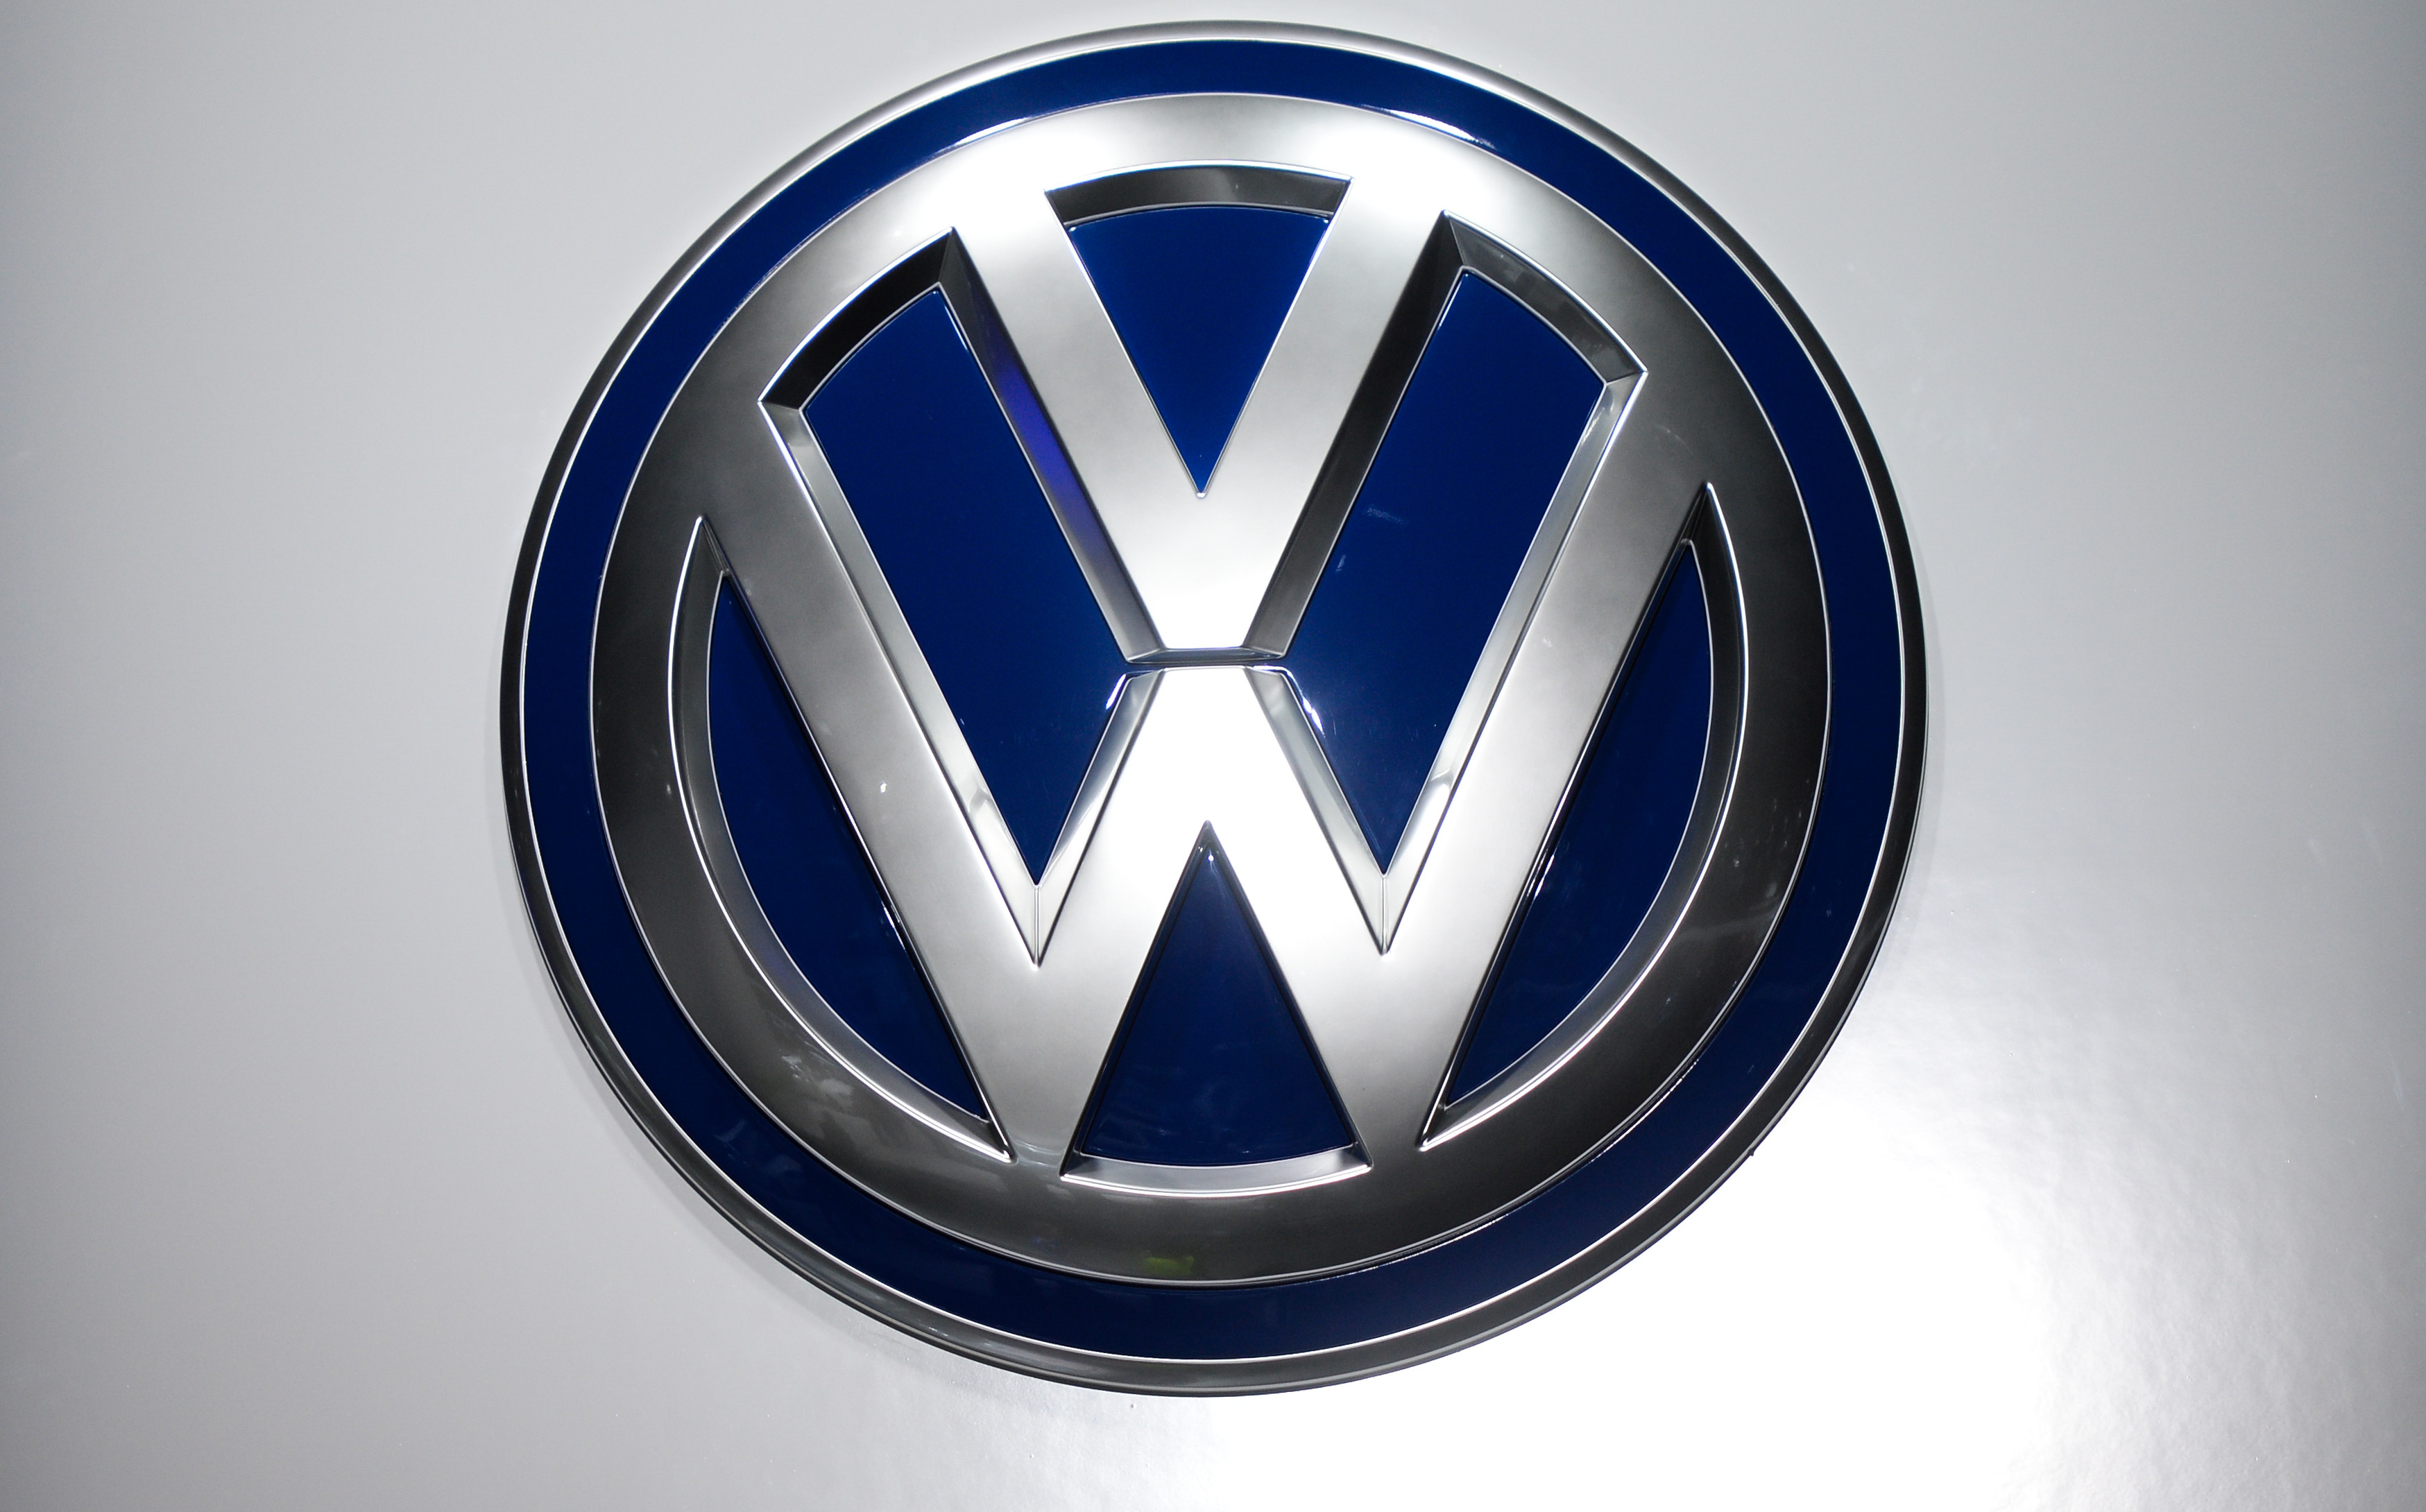 S volkswagen. Марка машины Volkswagen. Volkswagen эмблема. Фольксваген марка лого. Значок Фольксвагена на авто.